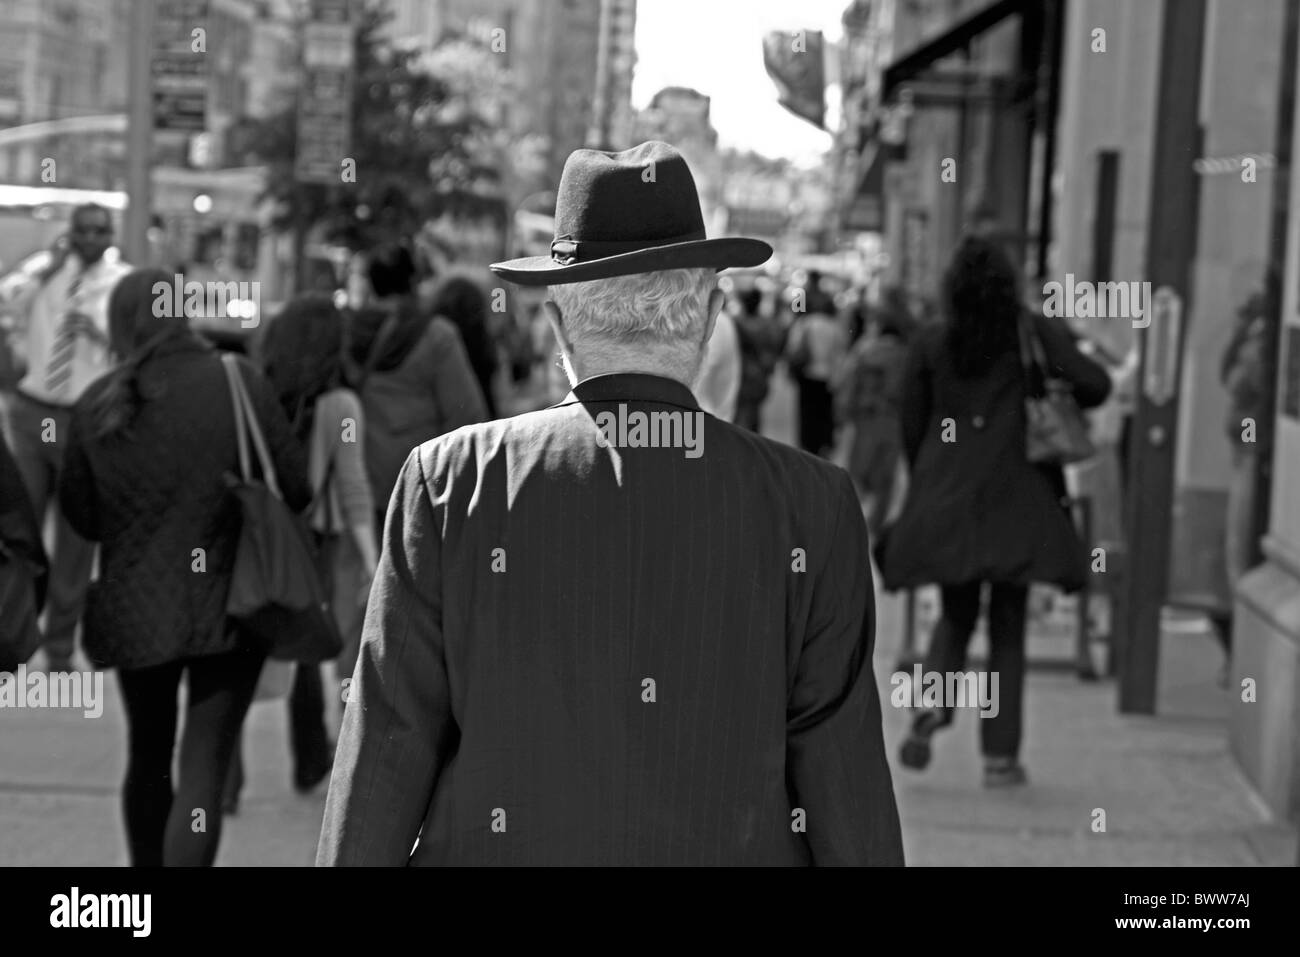 Un homme qui marche dans la ville de New York se distingue dans l'isolement de l'animation qui se passe autour de lui. Banque D'Images